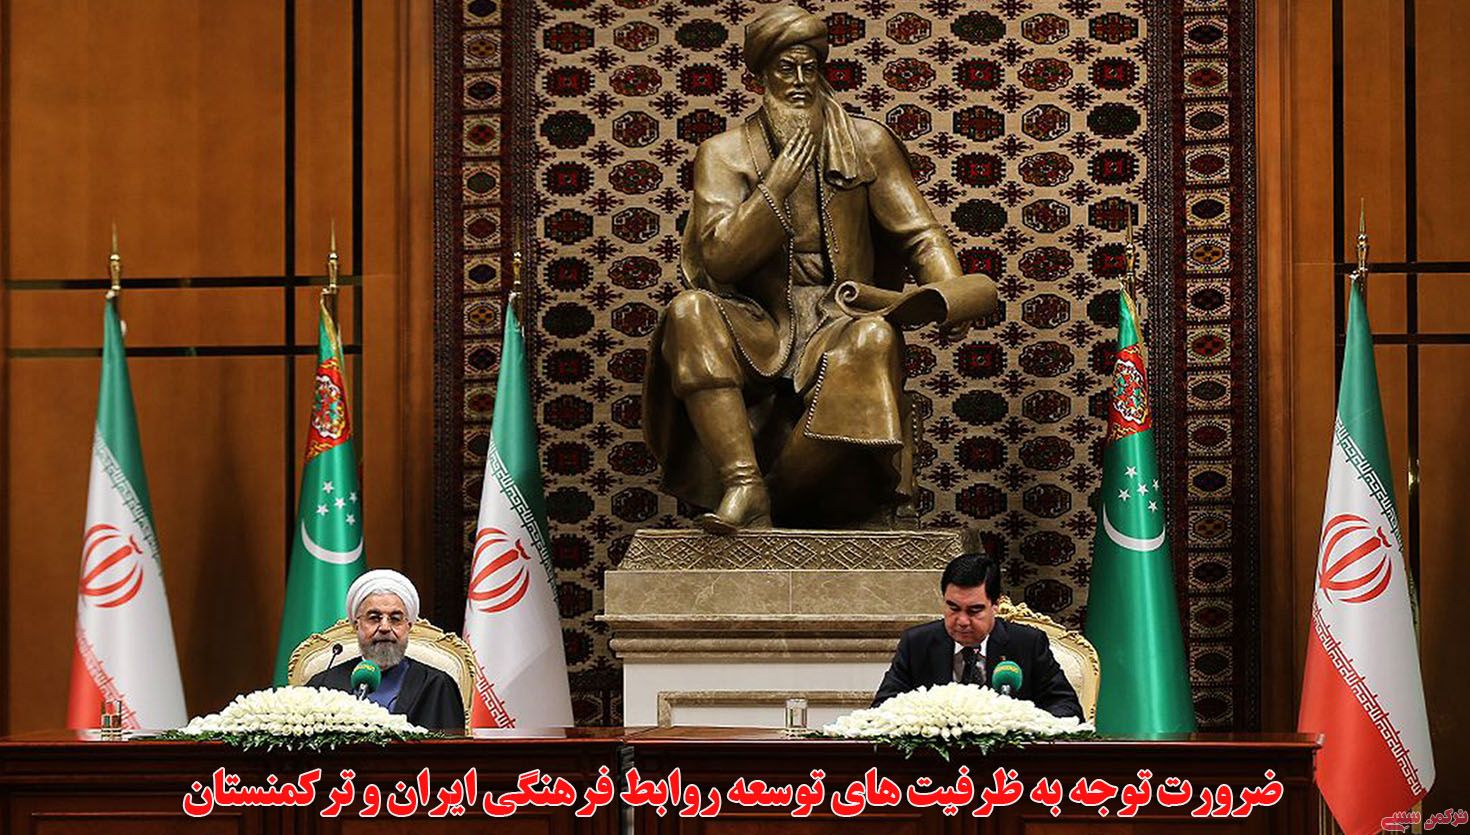 ضرورت توجه به ظرفيت هاي توسعه روابط فرهنگي ايران و تركمنستان